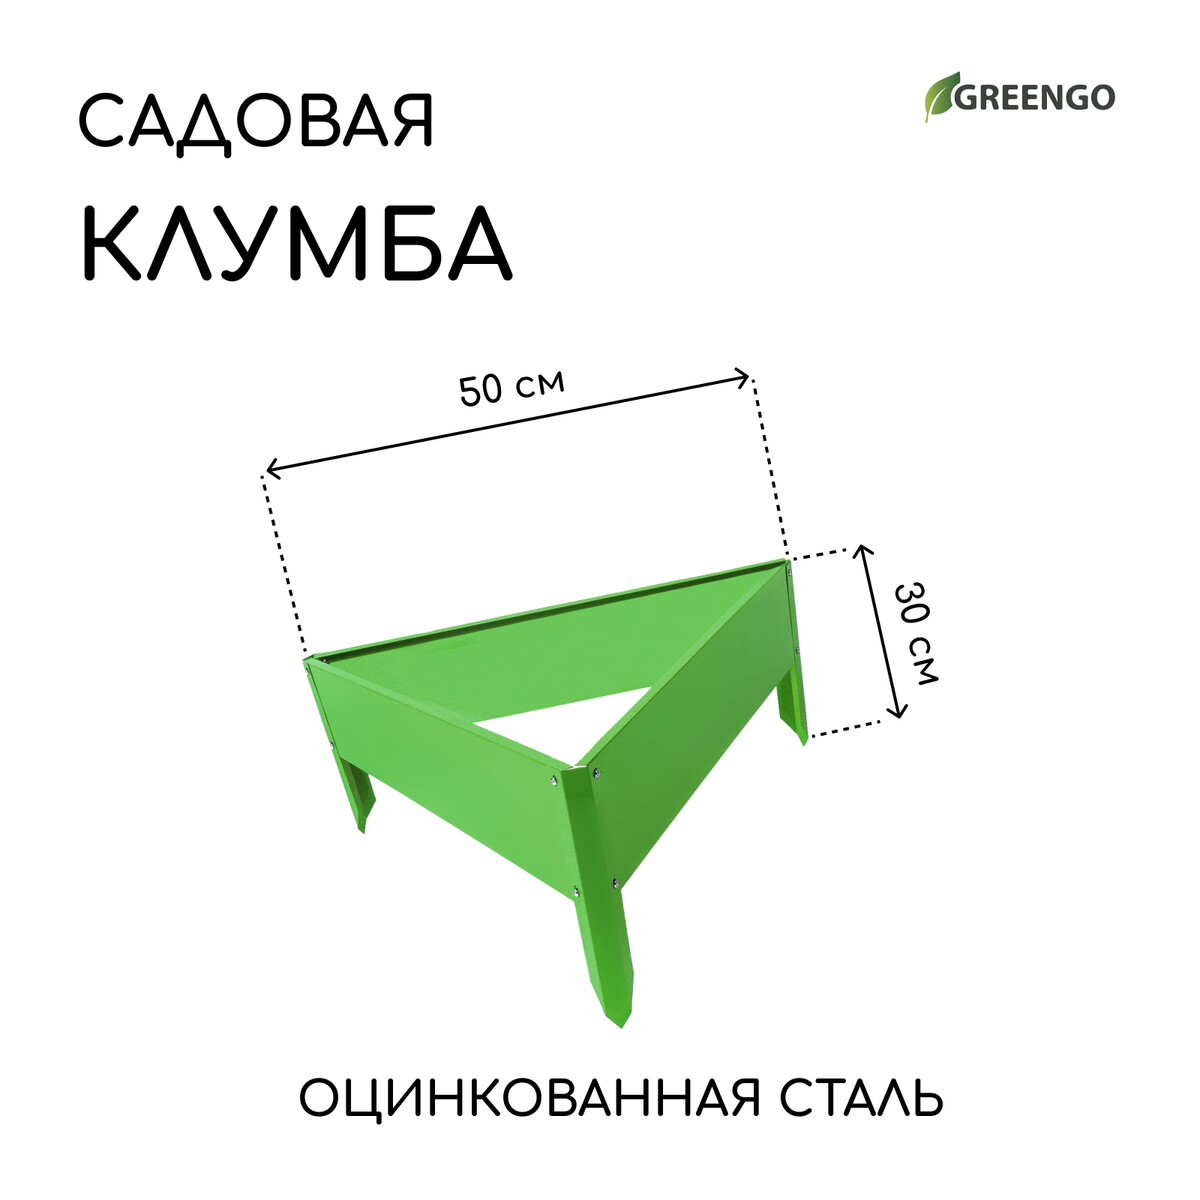 Клумба оцинкованная, 50 × 15 см, ярко-зеленая, клумба оцинкованная 50 × 50 × 15 см ярко зеленая greengo